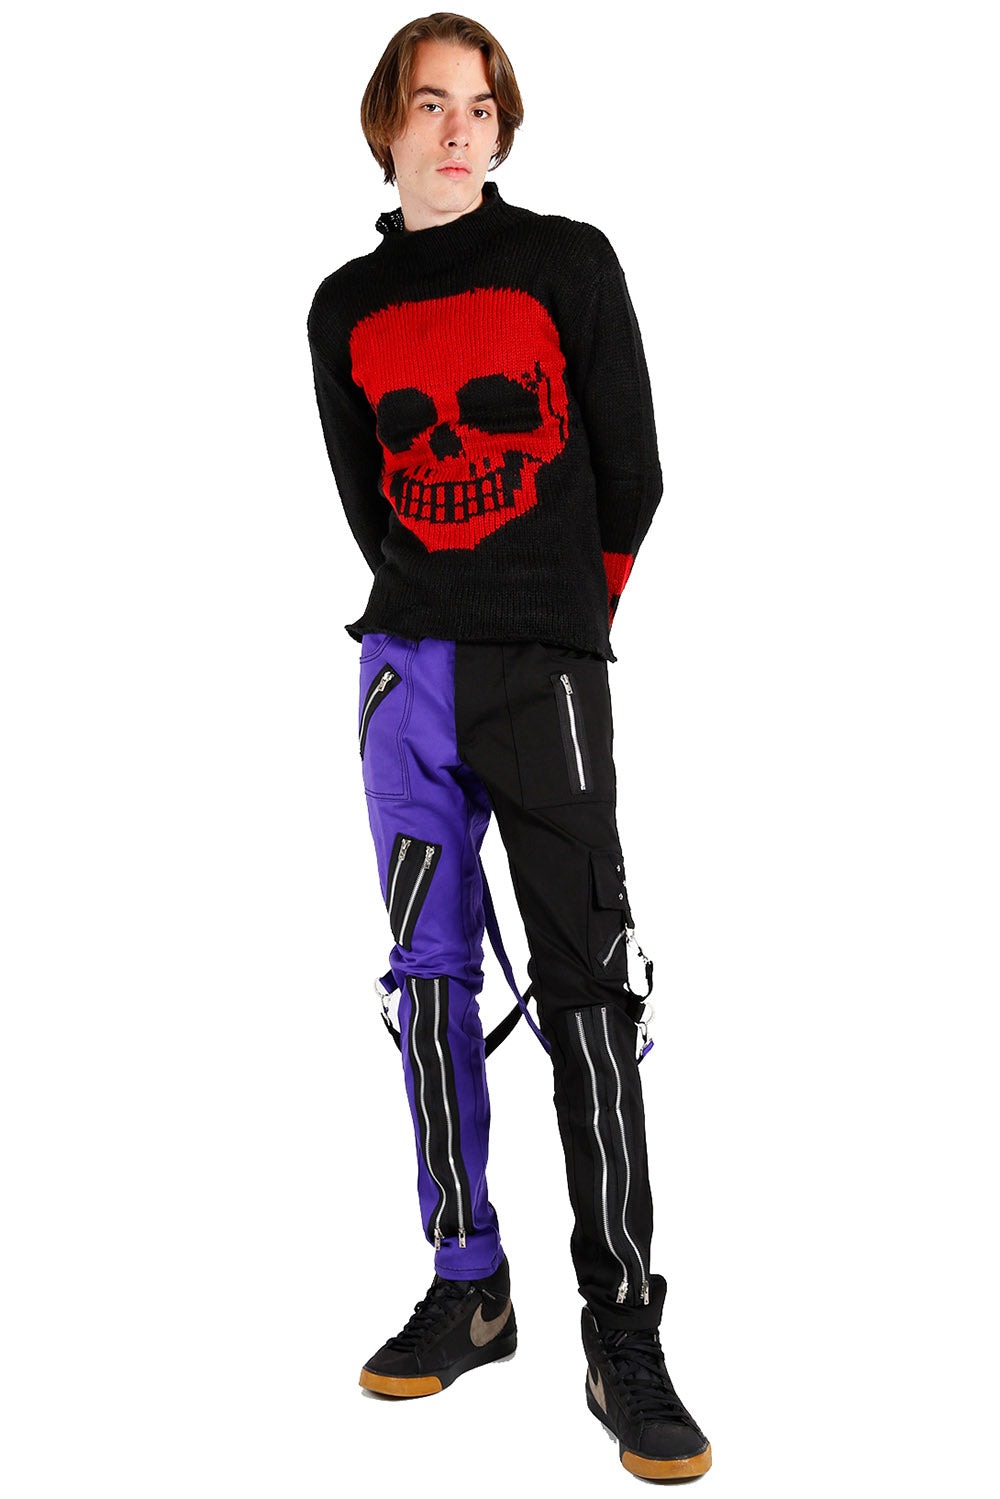 Tripp NYC Split Leg Bondage Pants [Black/Purple] – VampireFreaks